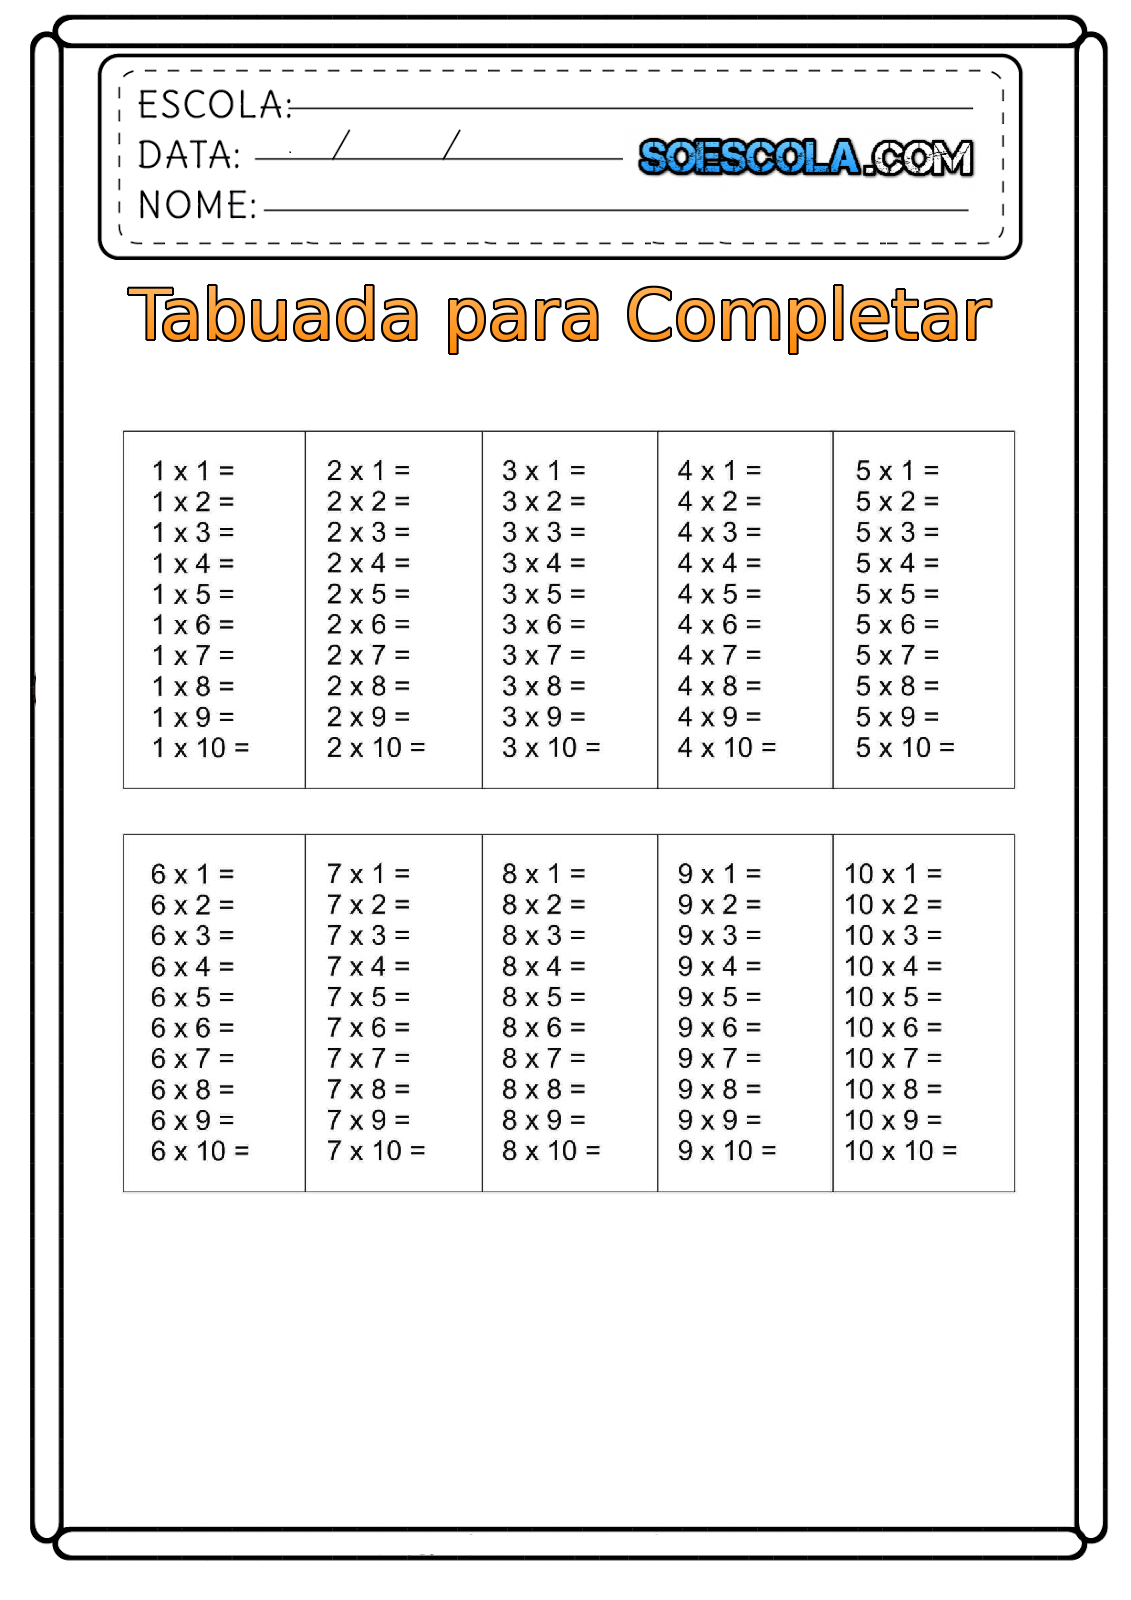 Tabuada de Multiplicação para Completar e Imprimir